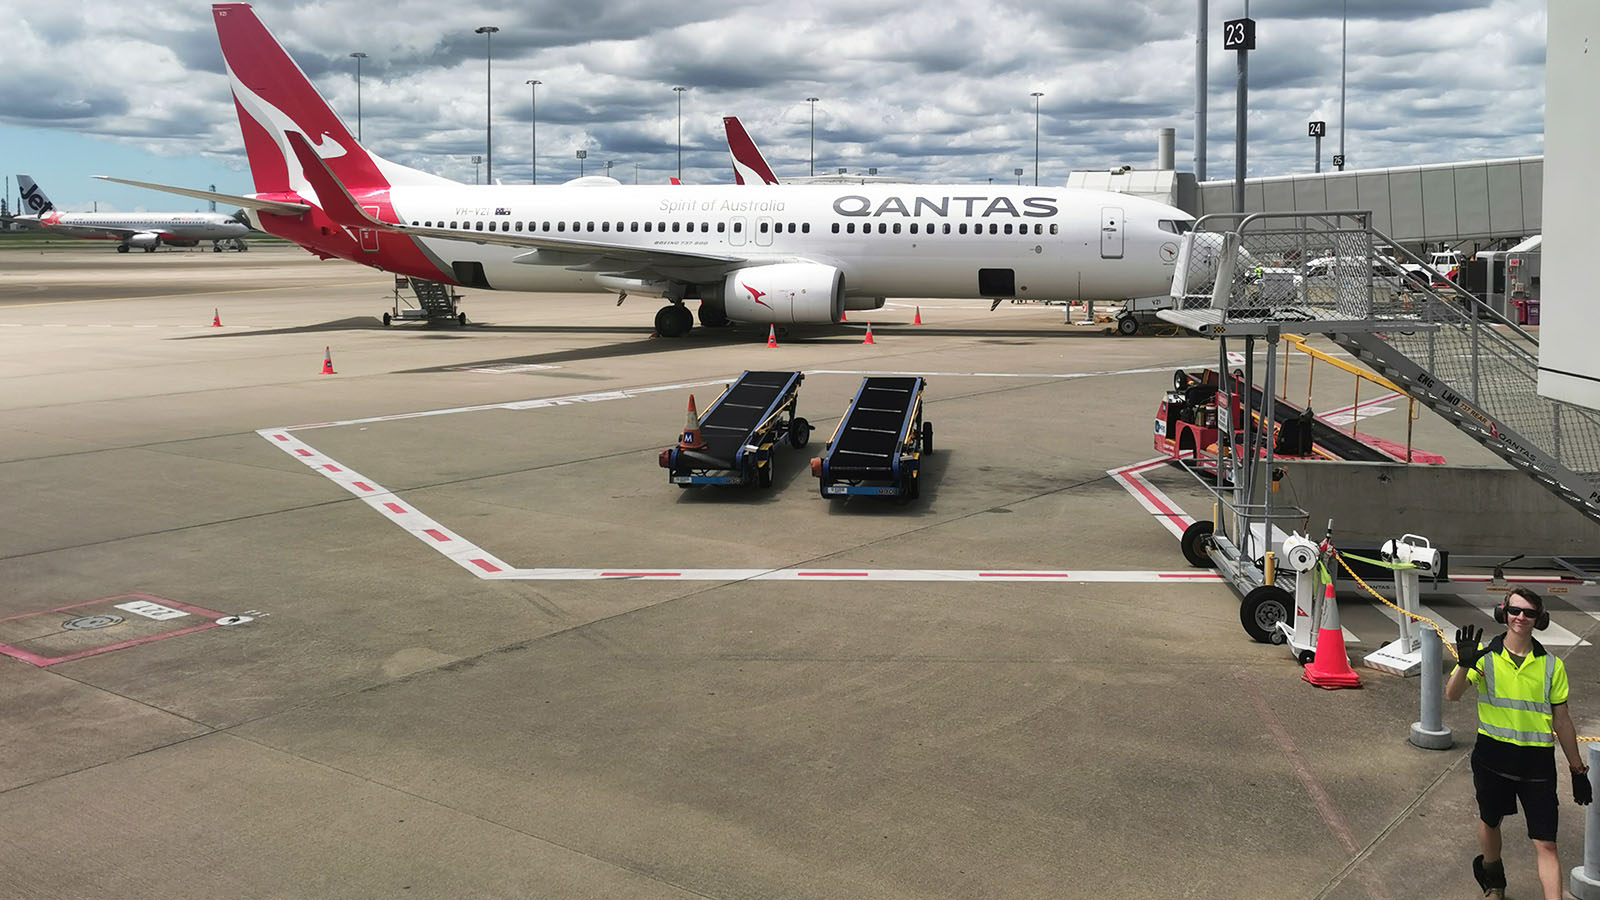 Qantas at Brisbane Airport